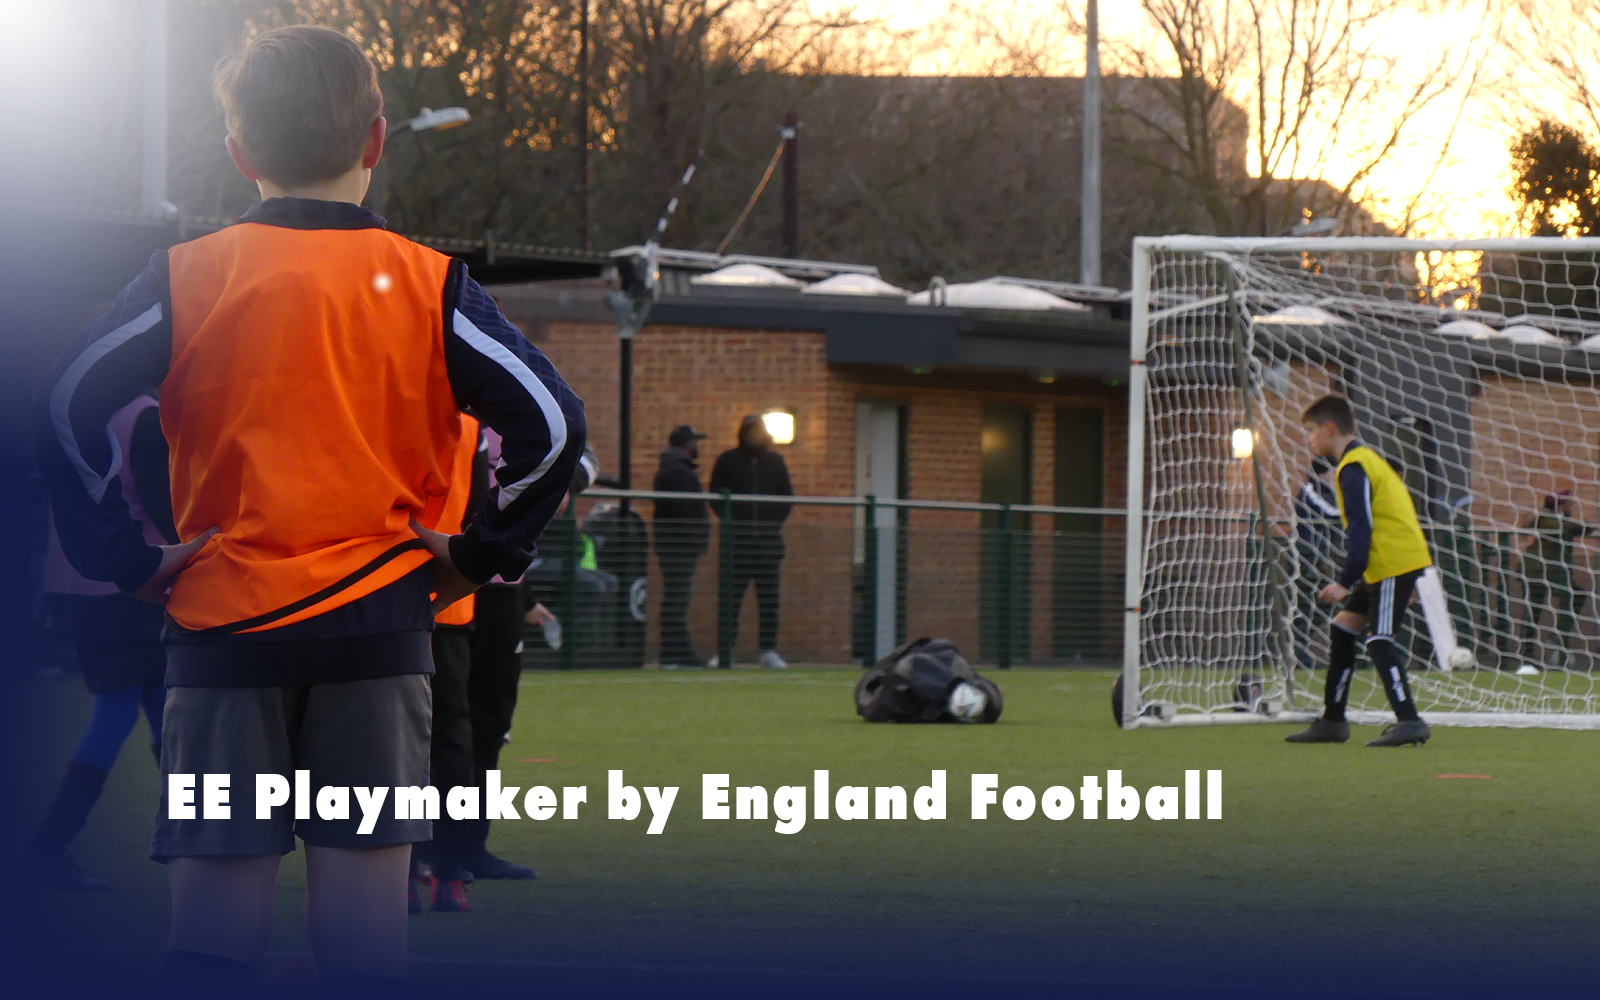 Volunteering in Football - EE Playmaker by England Football